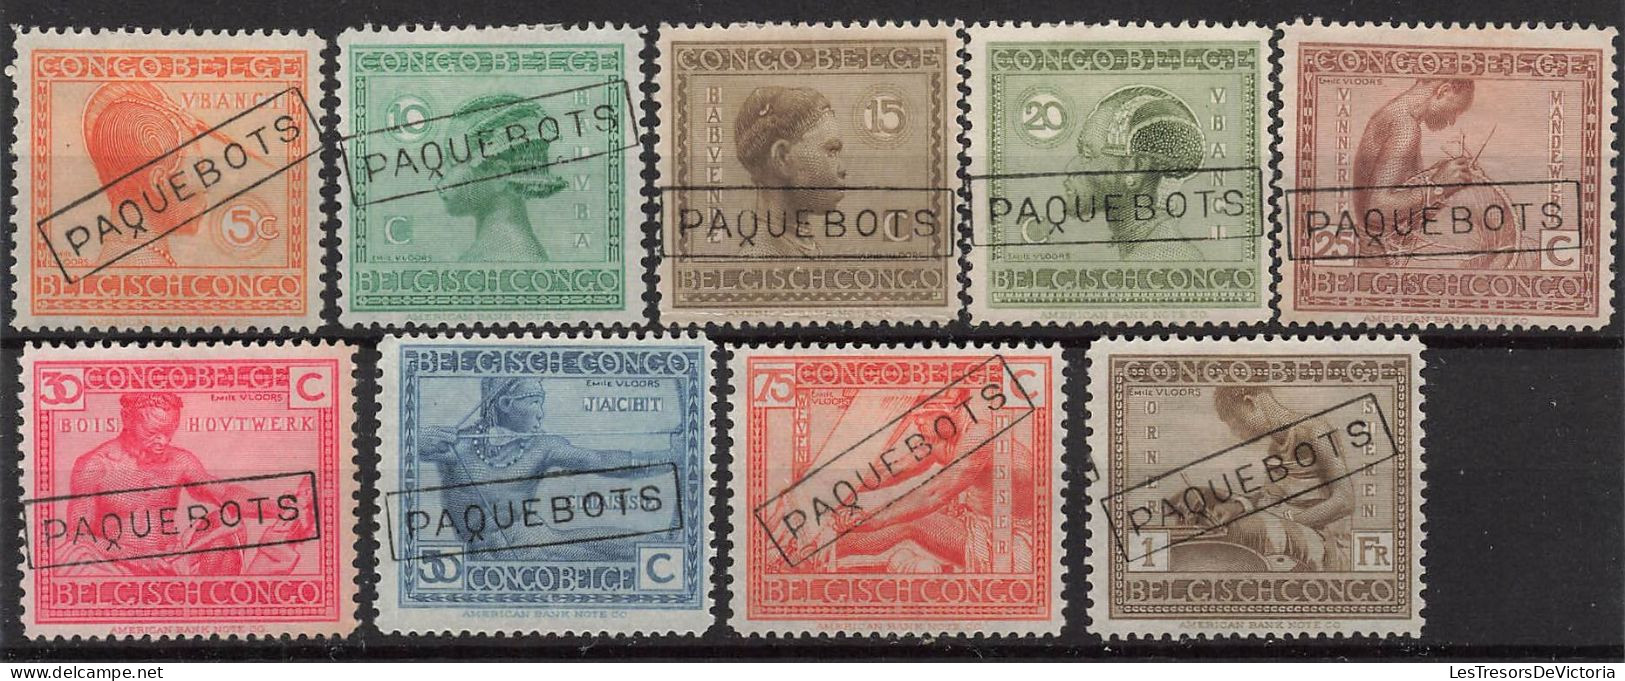 Timbres - Congo Belge - 1923 - COB 106/17 - Annulé Griffe - Ancadré Paquebot - Unused Stamps